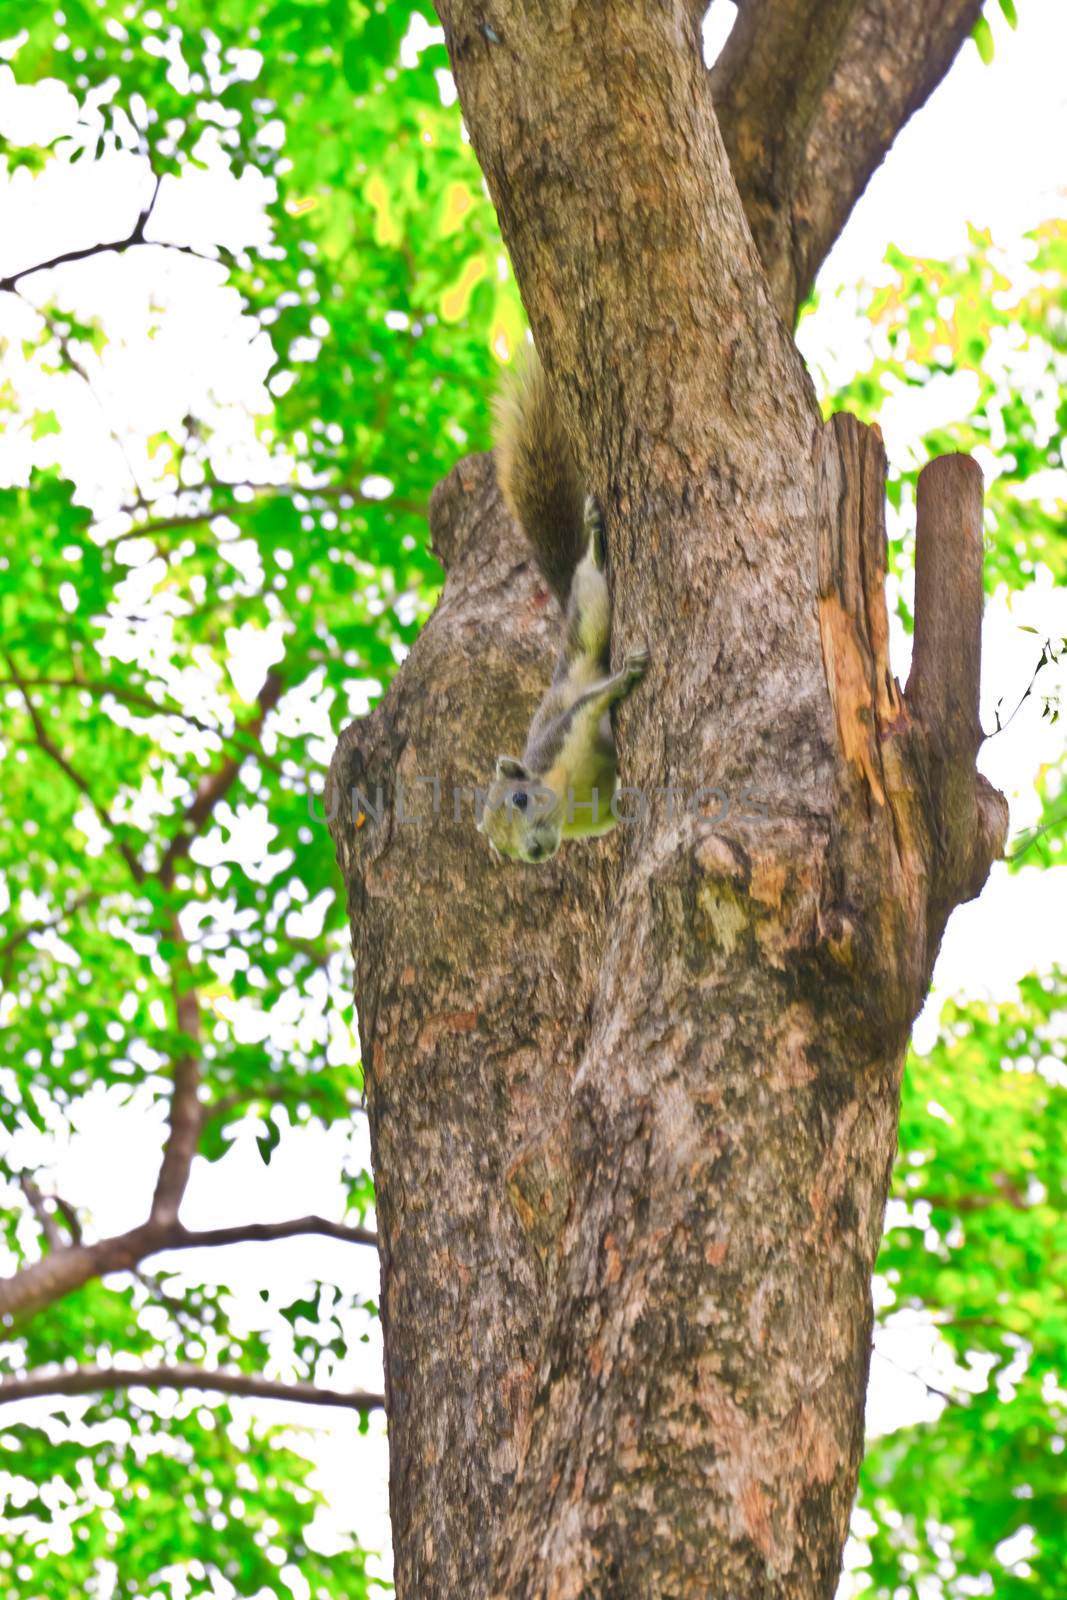 Tree bark, dry parts of the tree. 